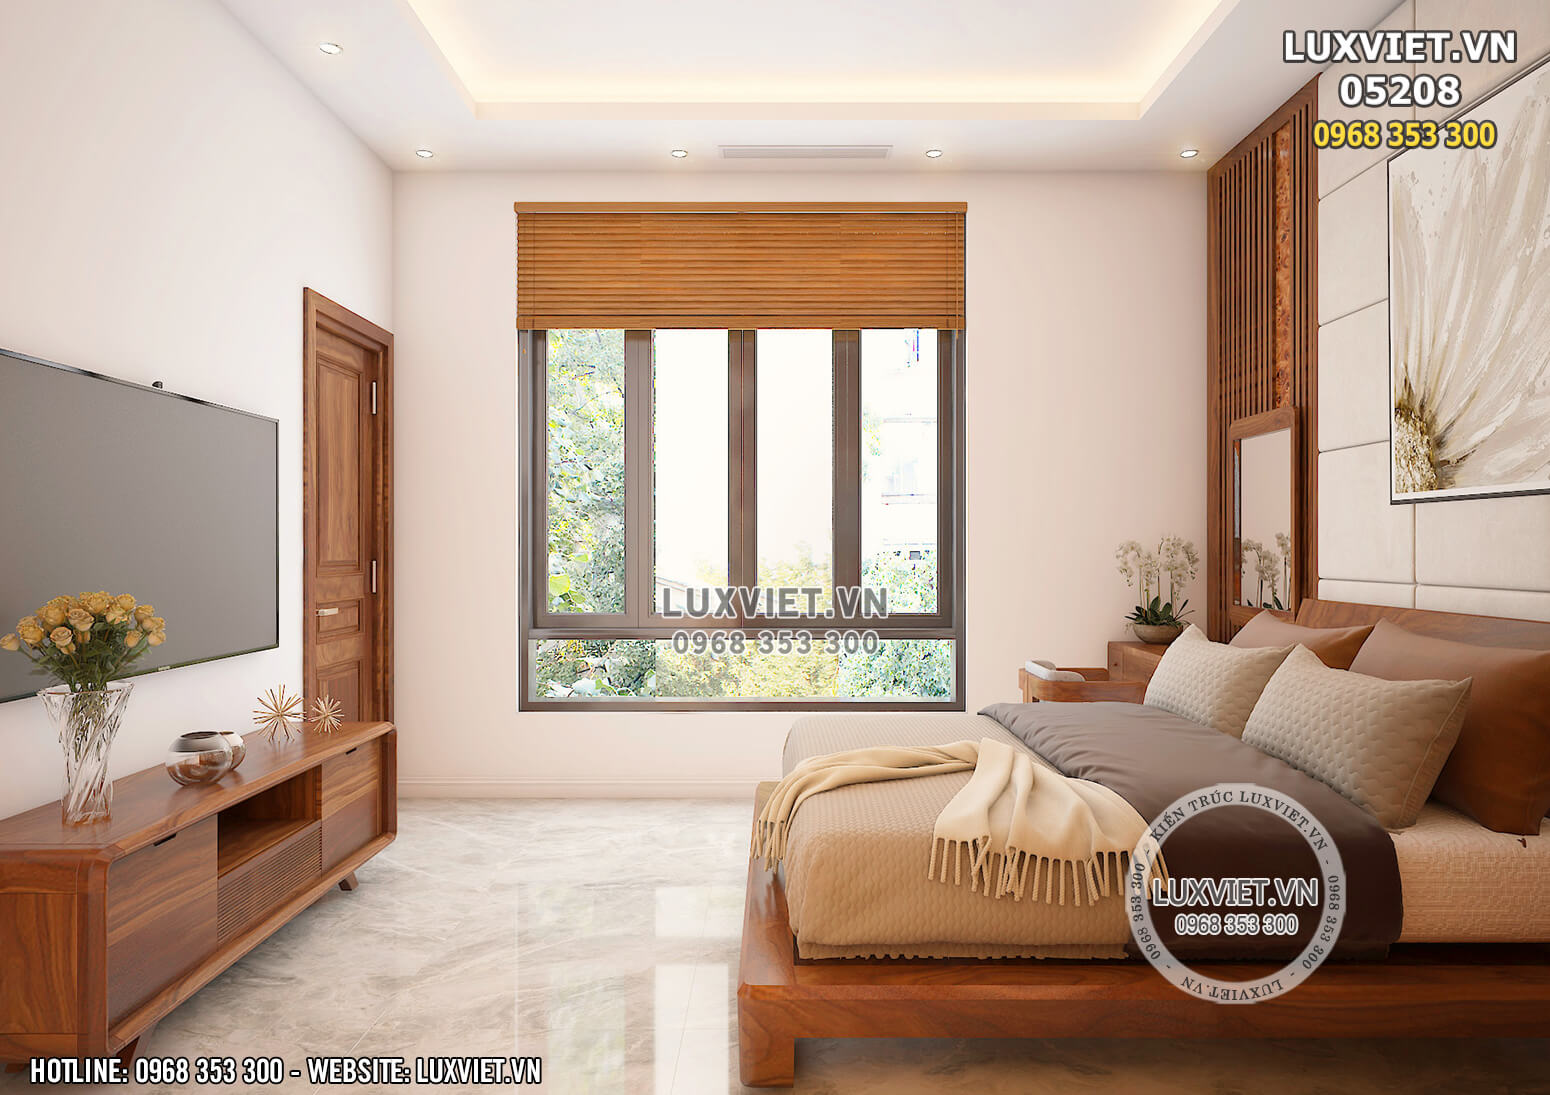 Hình ảnh: Thiết kế nội thất phòng ngủ hiện đại - LV 05208